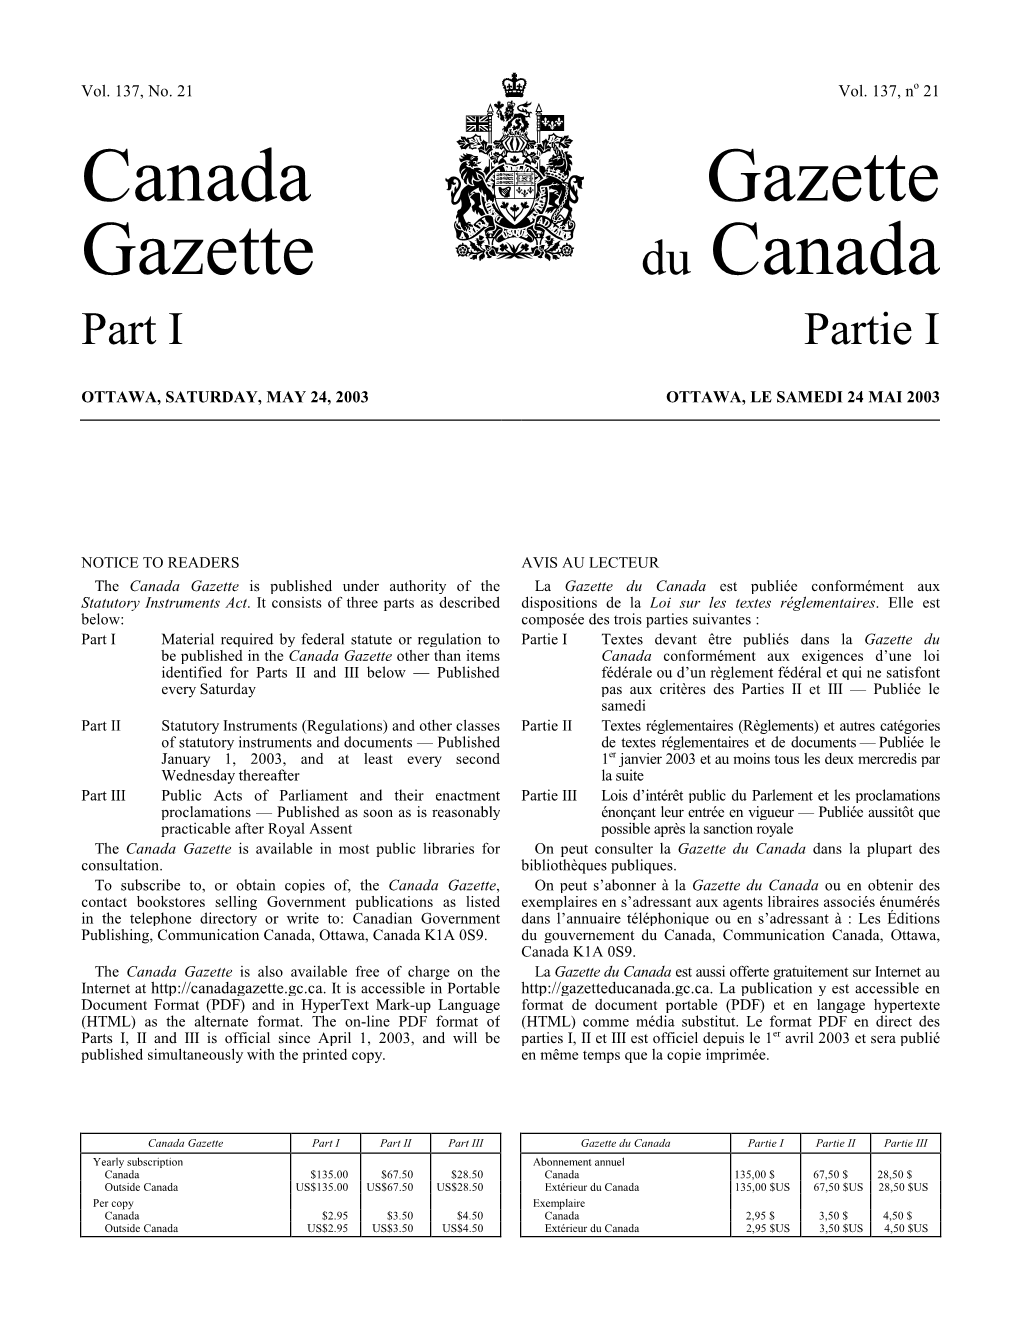 Canada Gazette, Part I, Is Hereby Amended As Follows: Partie I De La Gazette Du Canada Est Modifié Comme Suit : from the Government of the U.S.A